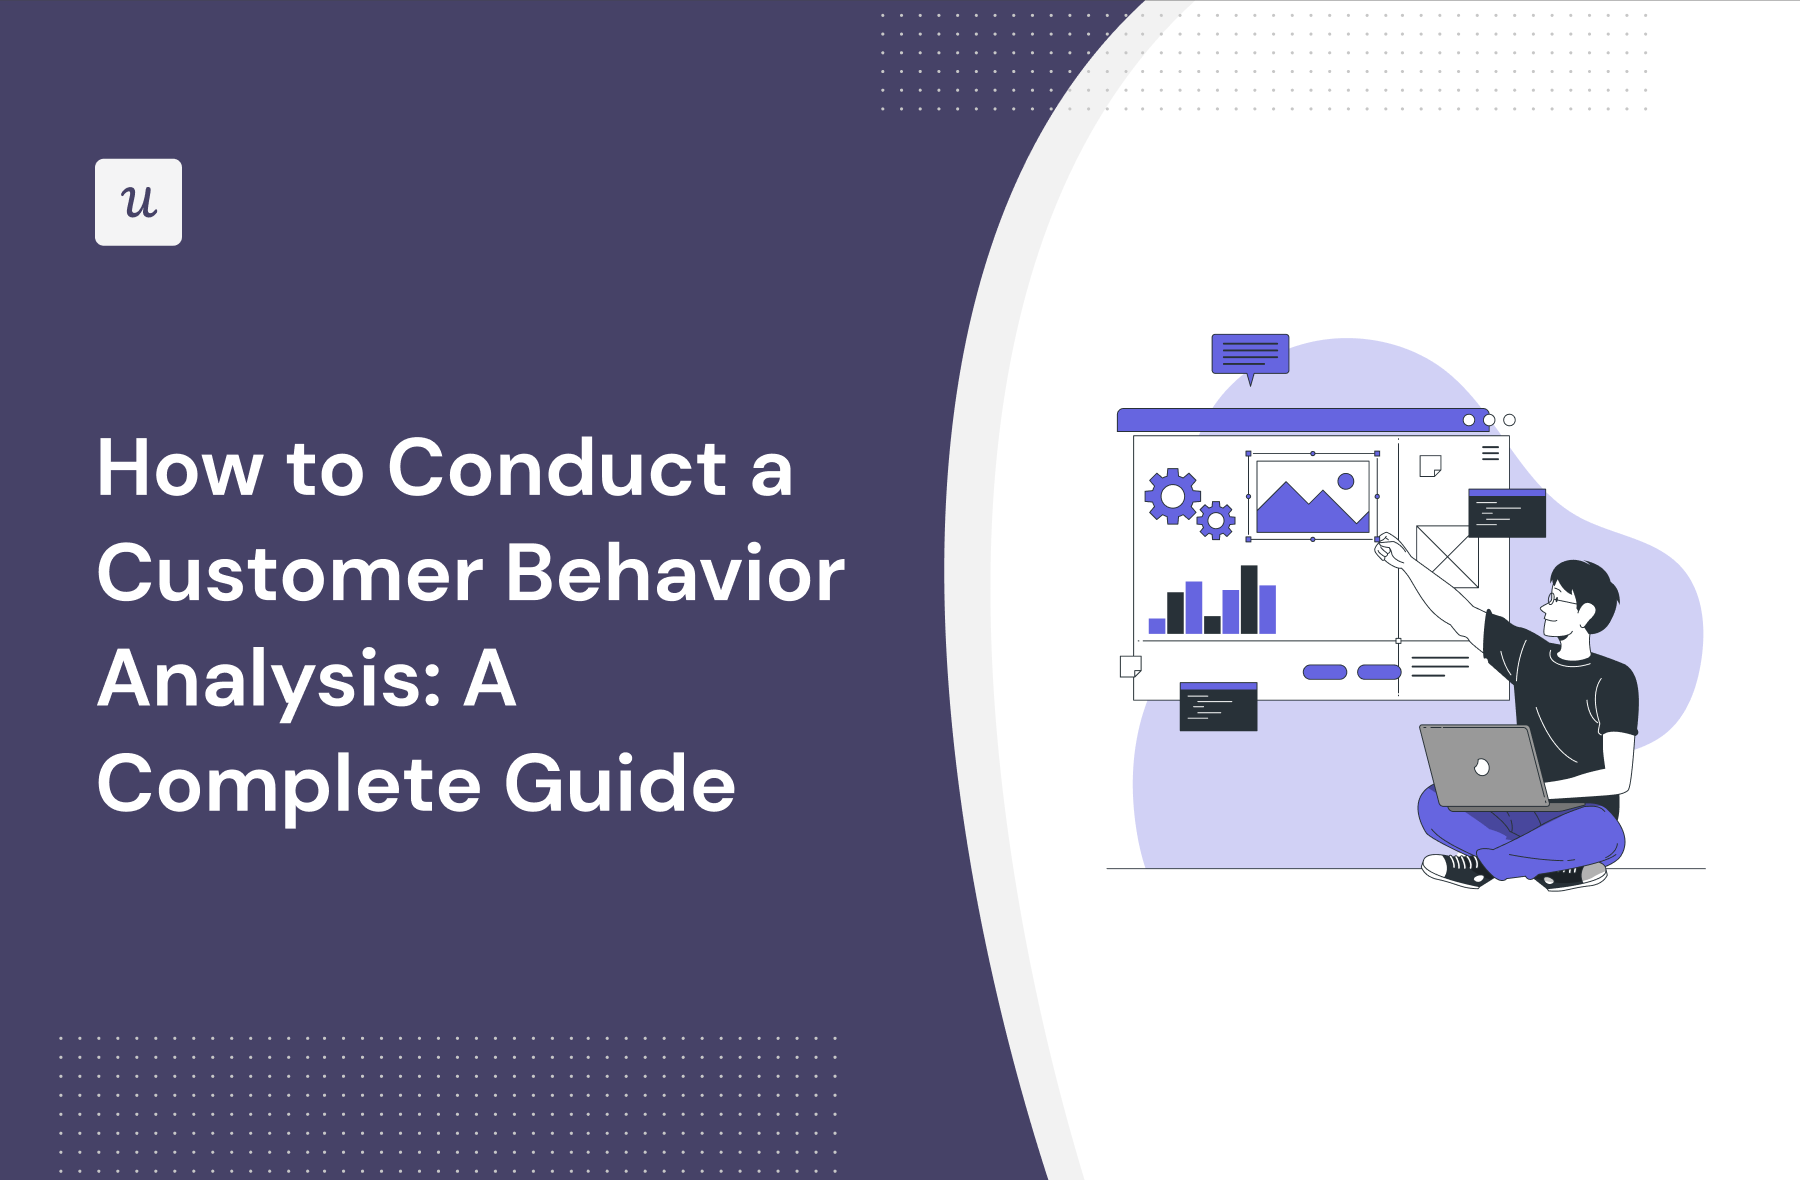 Customer behavior analysis